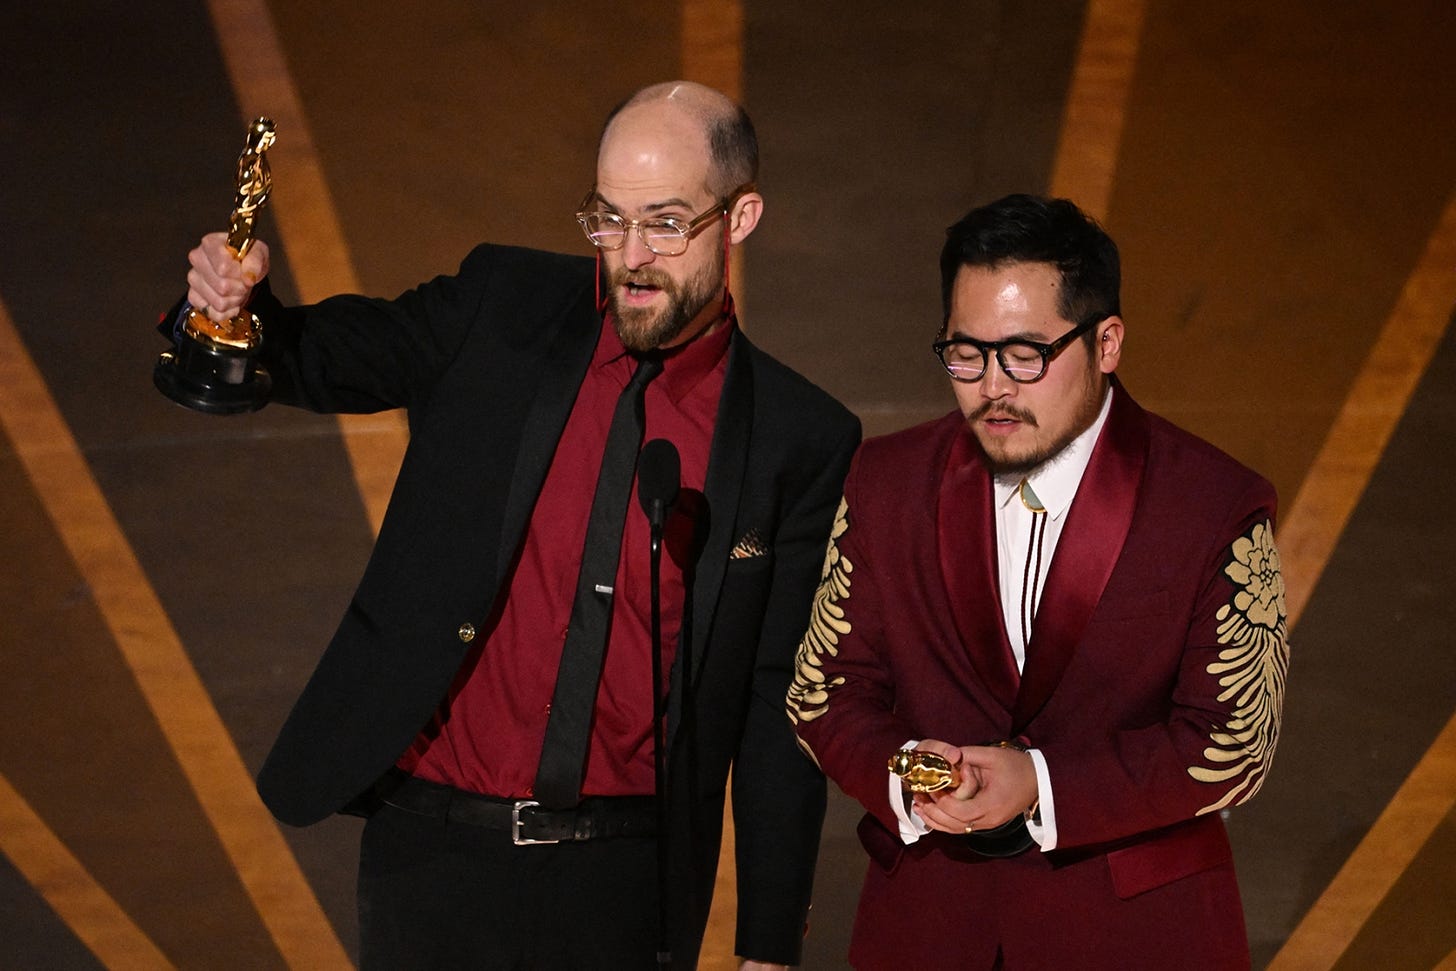 Daniel Scheinert and Daniel Kwan, winners of Oscars 2023 Best Director, The Academy Awards